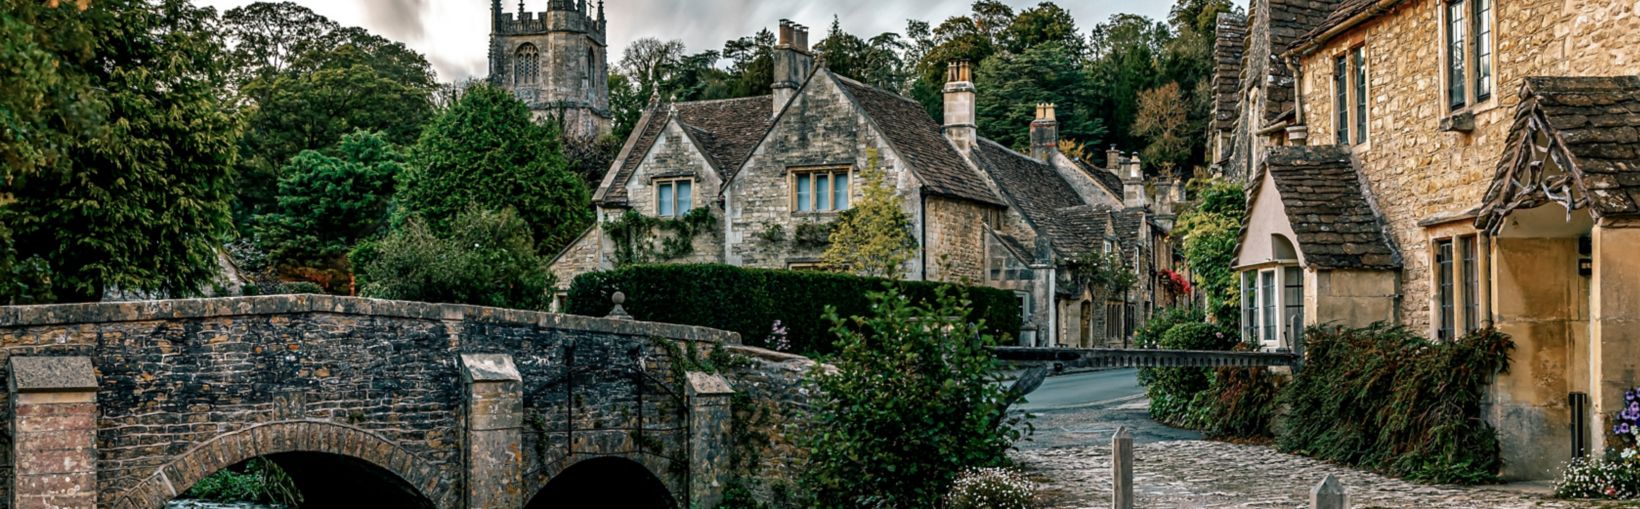 Udsigt over den maleriske Castle Combe-landsby i England